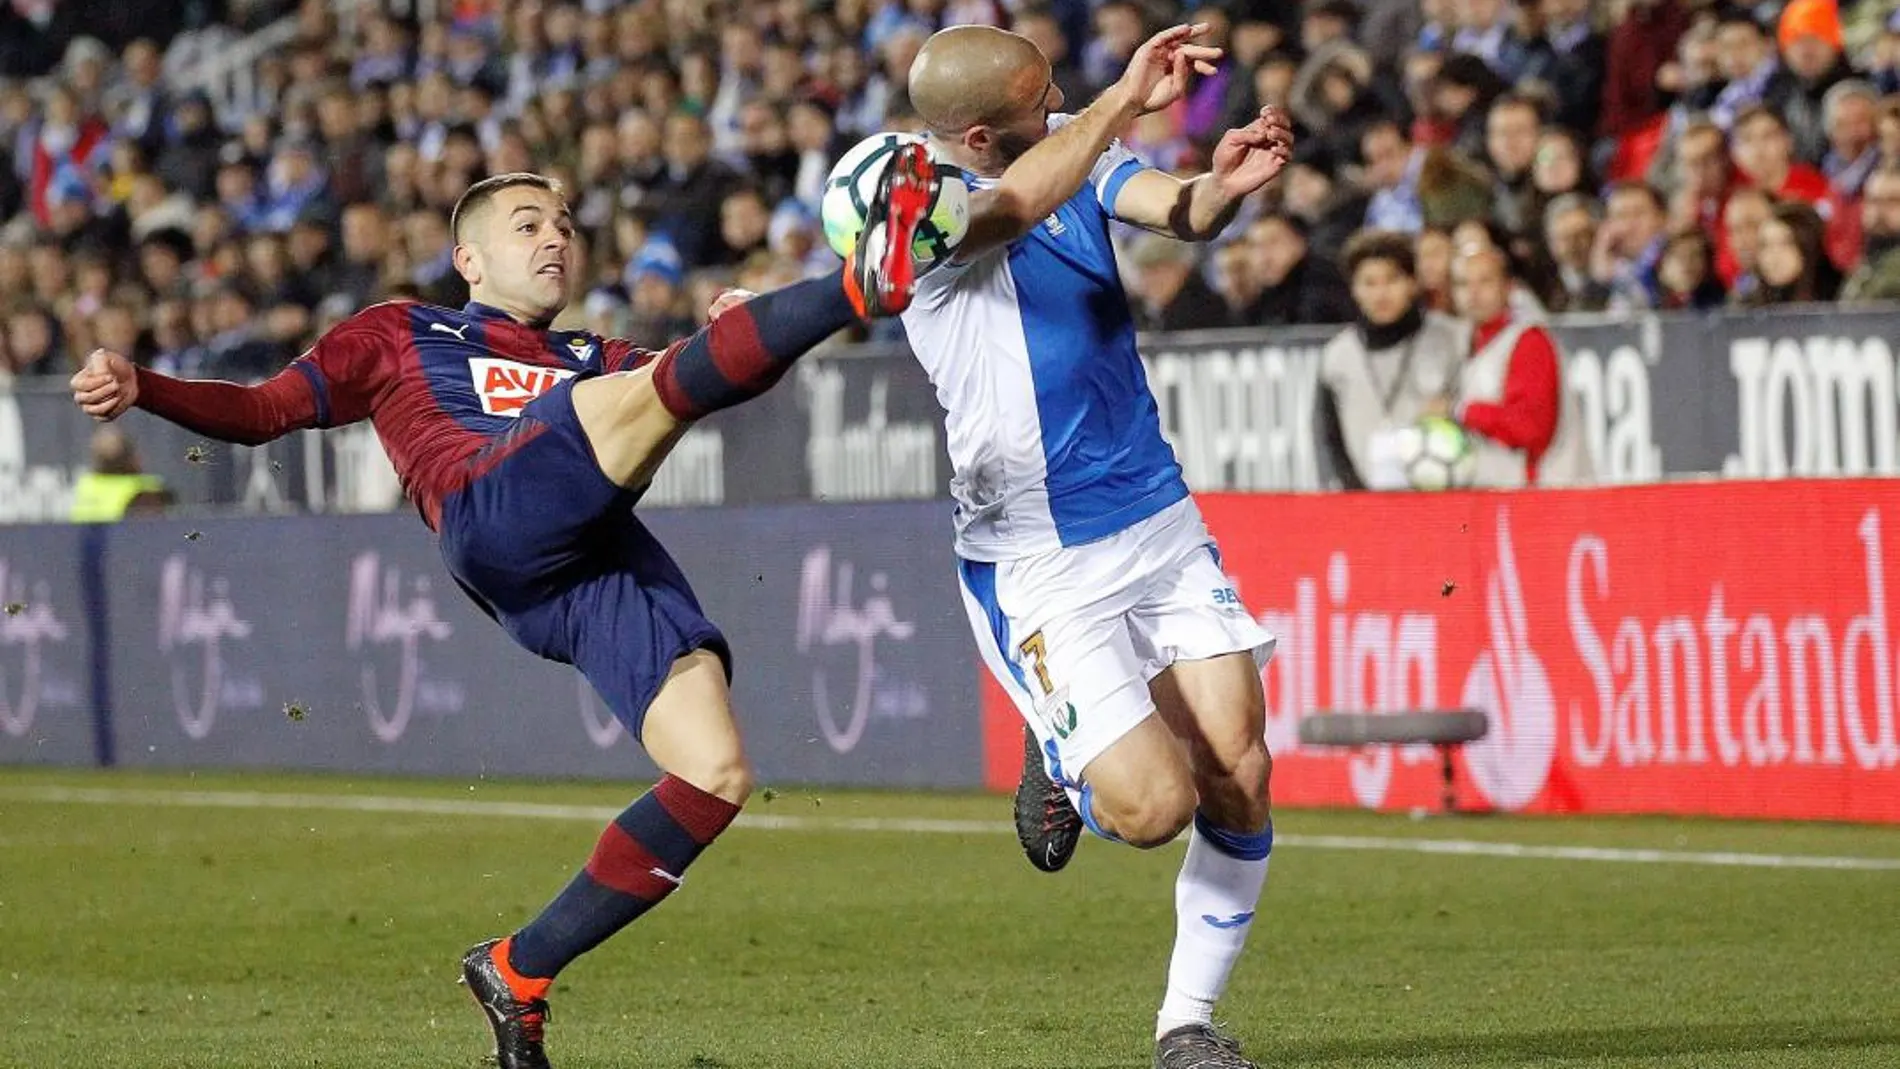 El centrocampista del Eibar, Rubén Peña, intenta despejar el balón ante el delantero holandés del Leganés, Nordin Amrabat